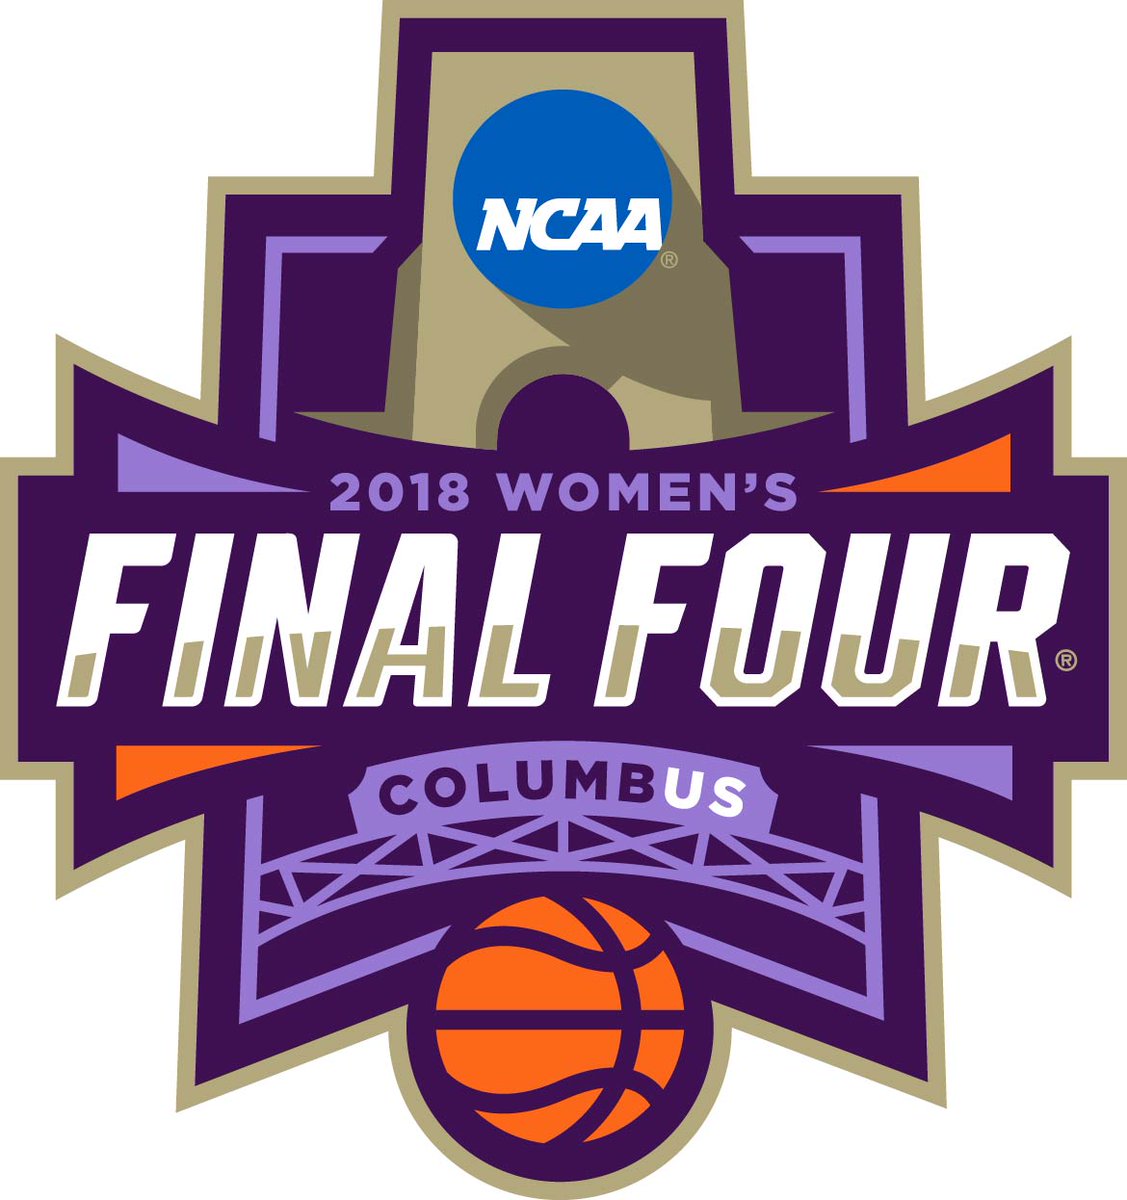 2018 women's Final Four logo